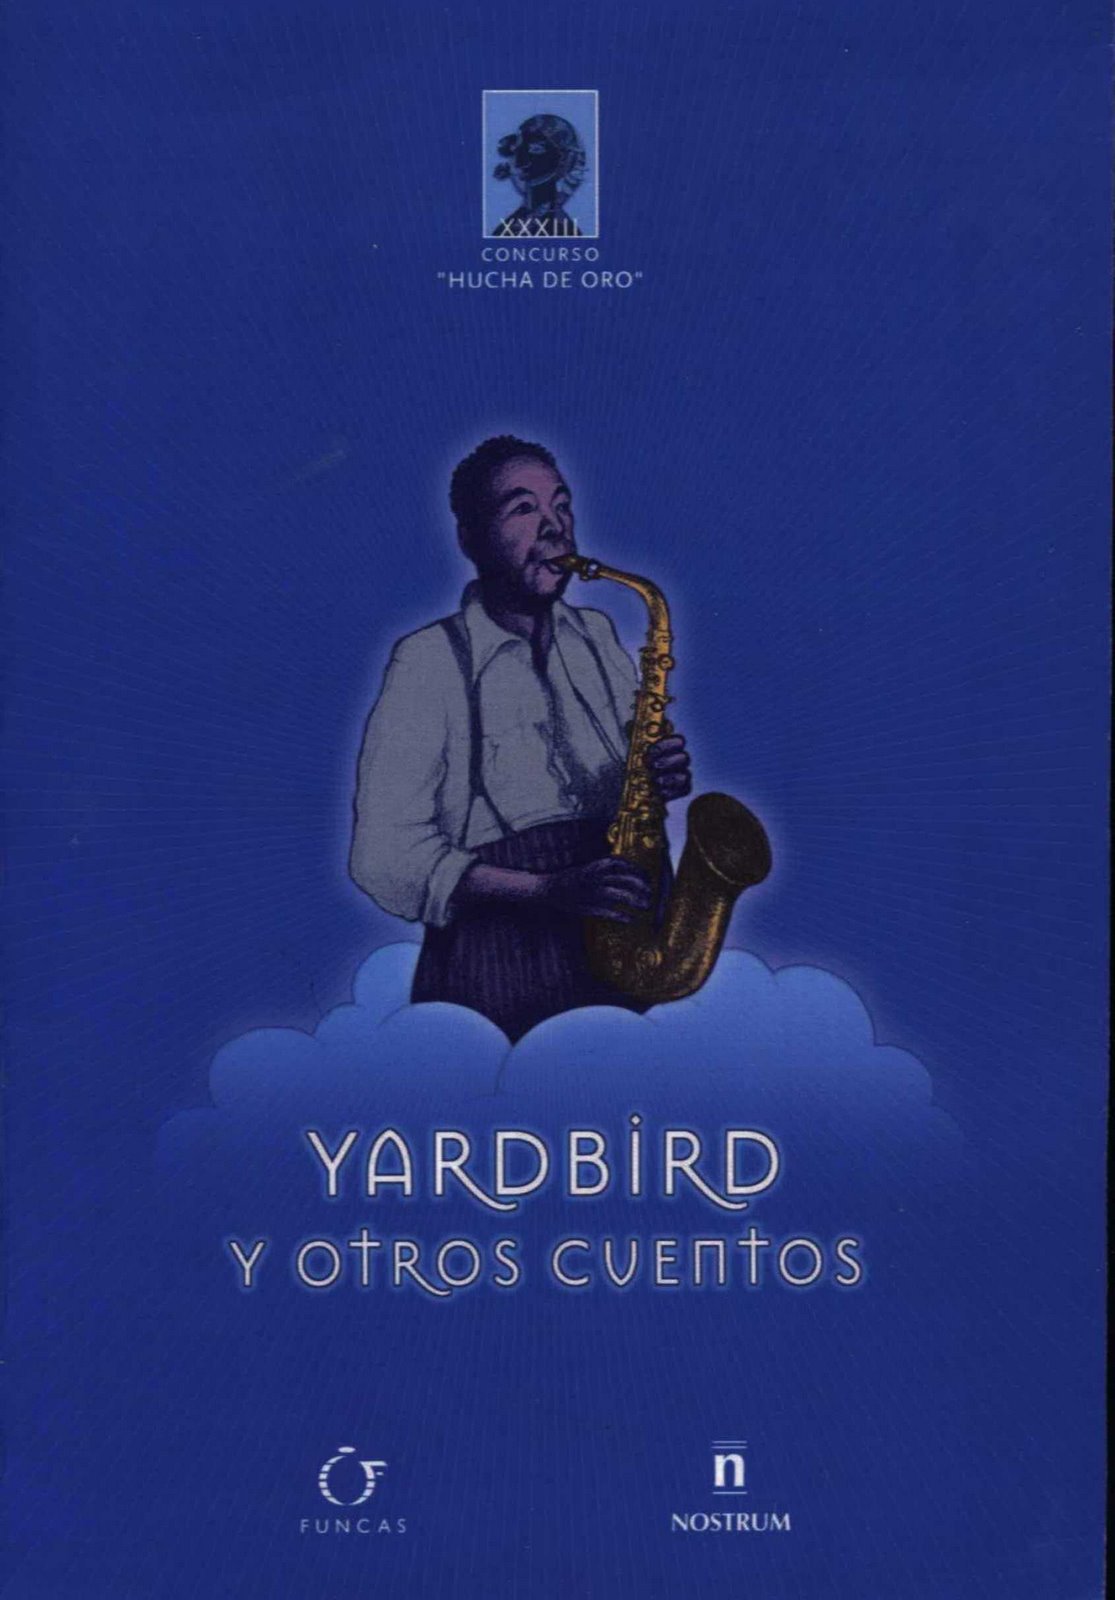 Yardbird y otrs cuentos. Premio Internacional de Cuentos "Hucha de Oro", España, 2005